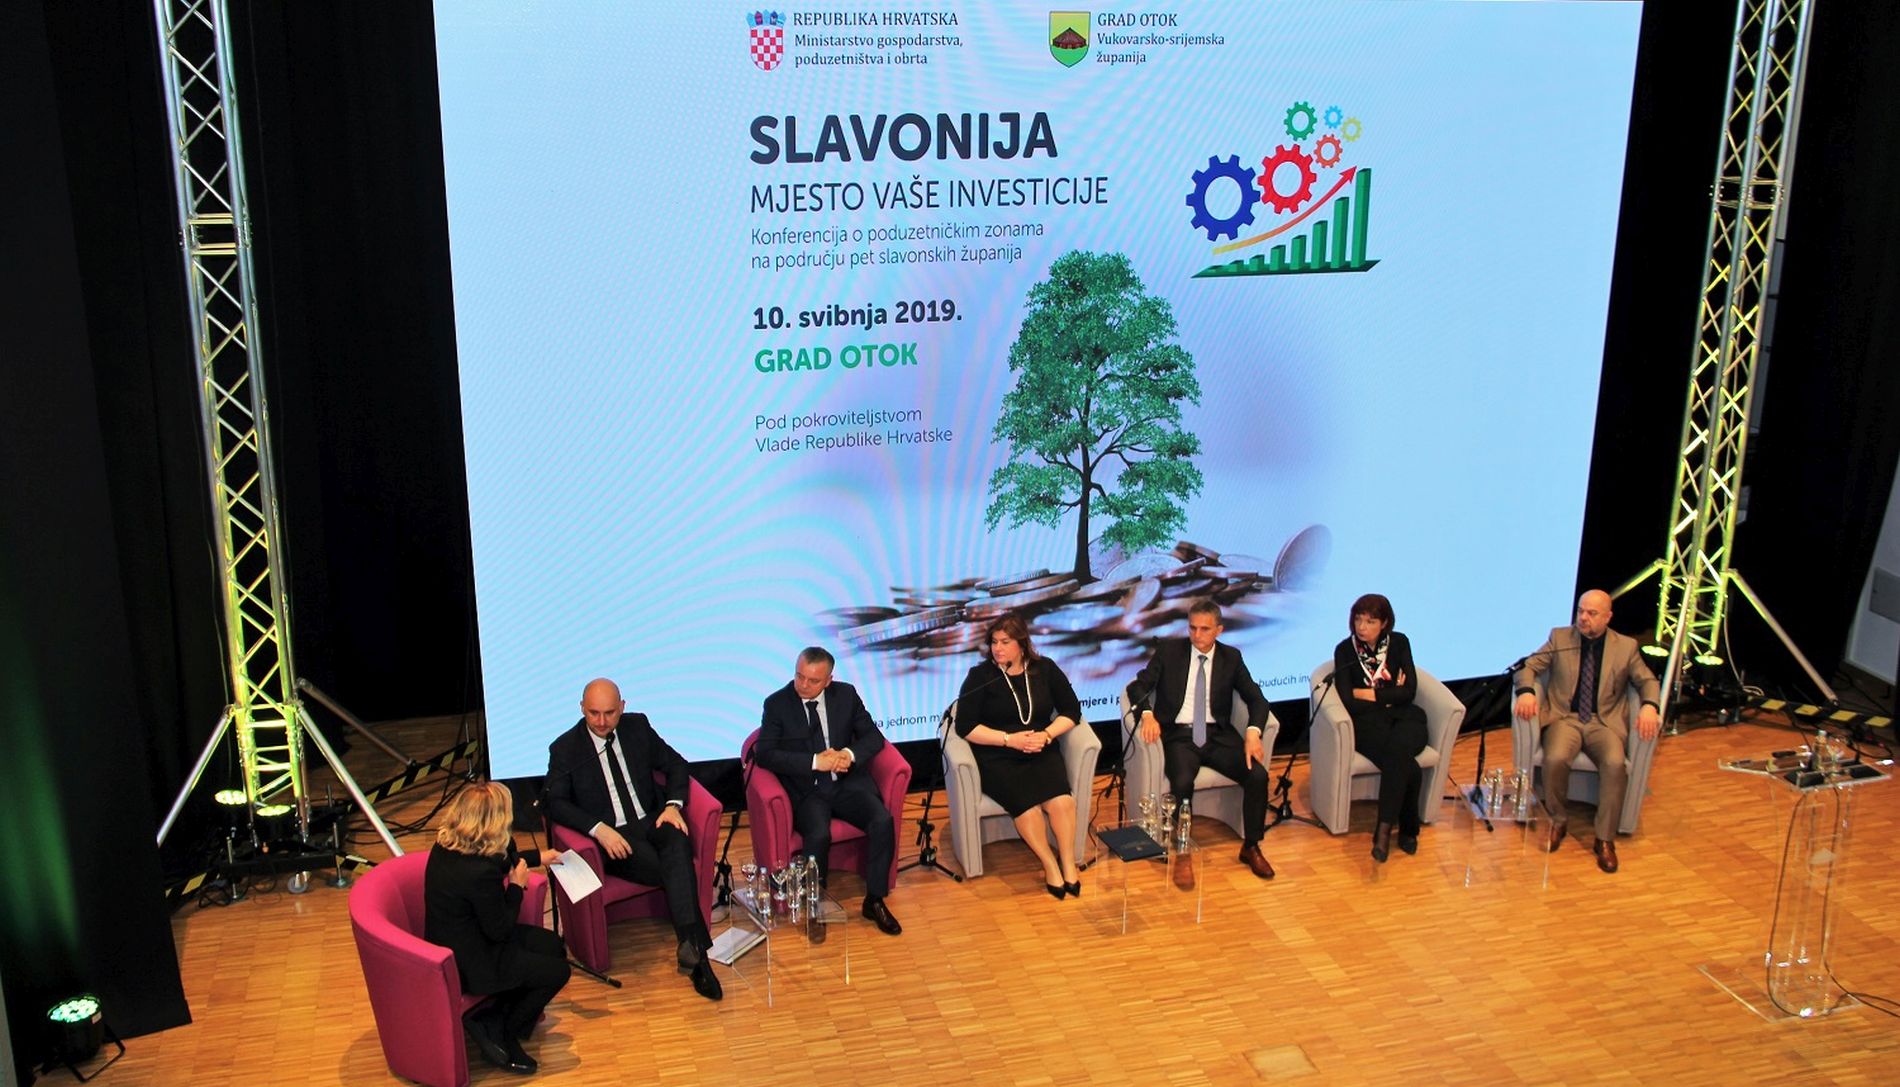 Horvat na konferenciji ‘Slavonija, mjesto vaše investicije’: usvojili smo novu, proaktivnu filozofiju